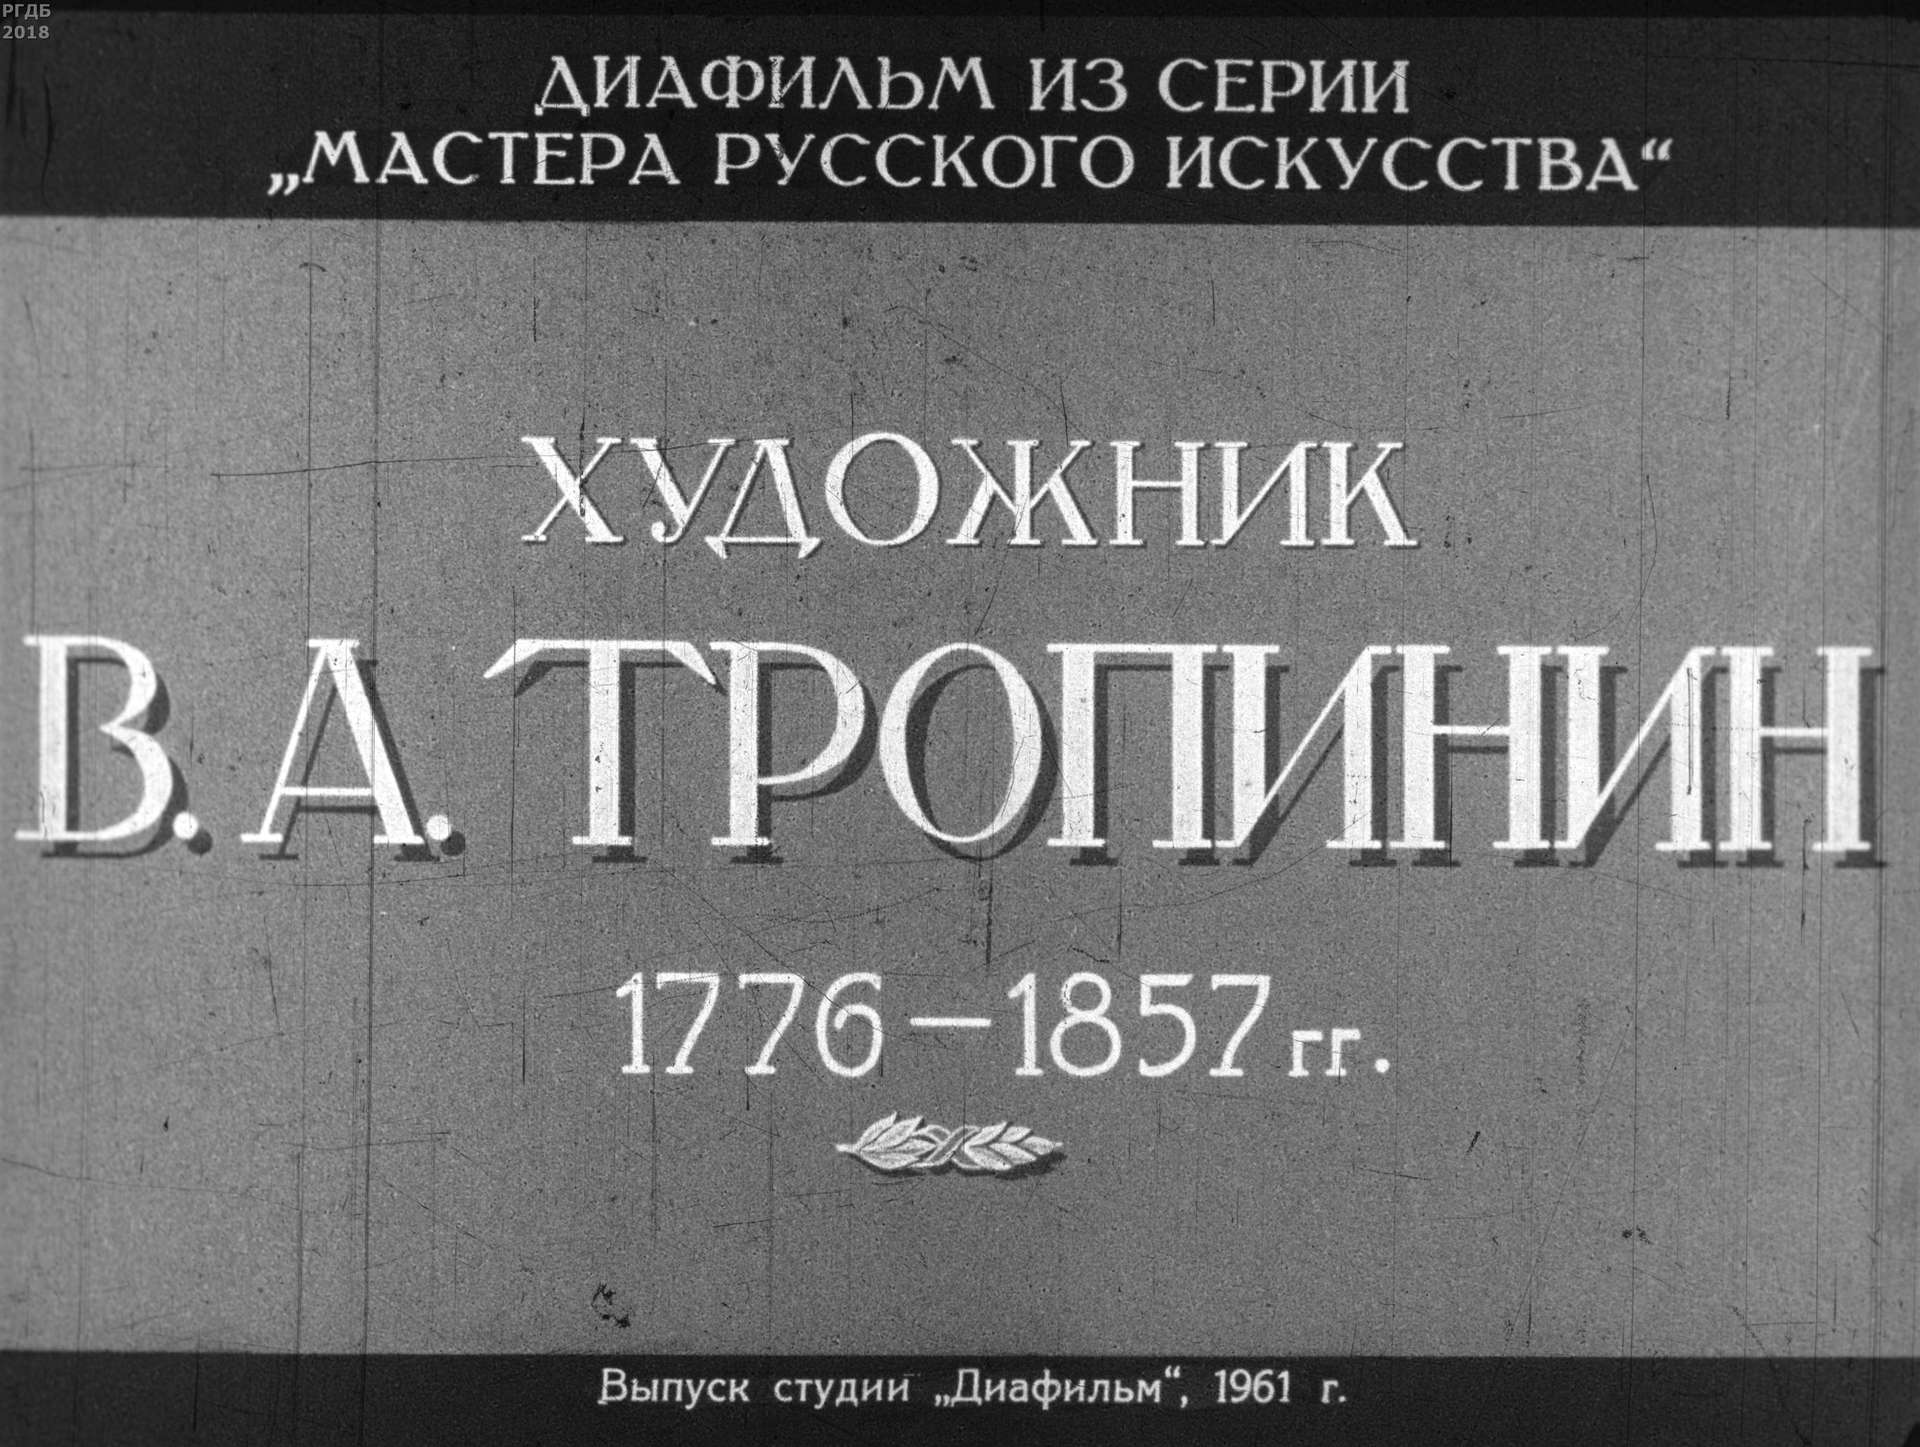 Художник В.А. Тропинин. 1776-1857 гг.